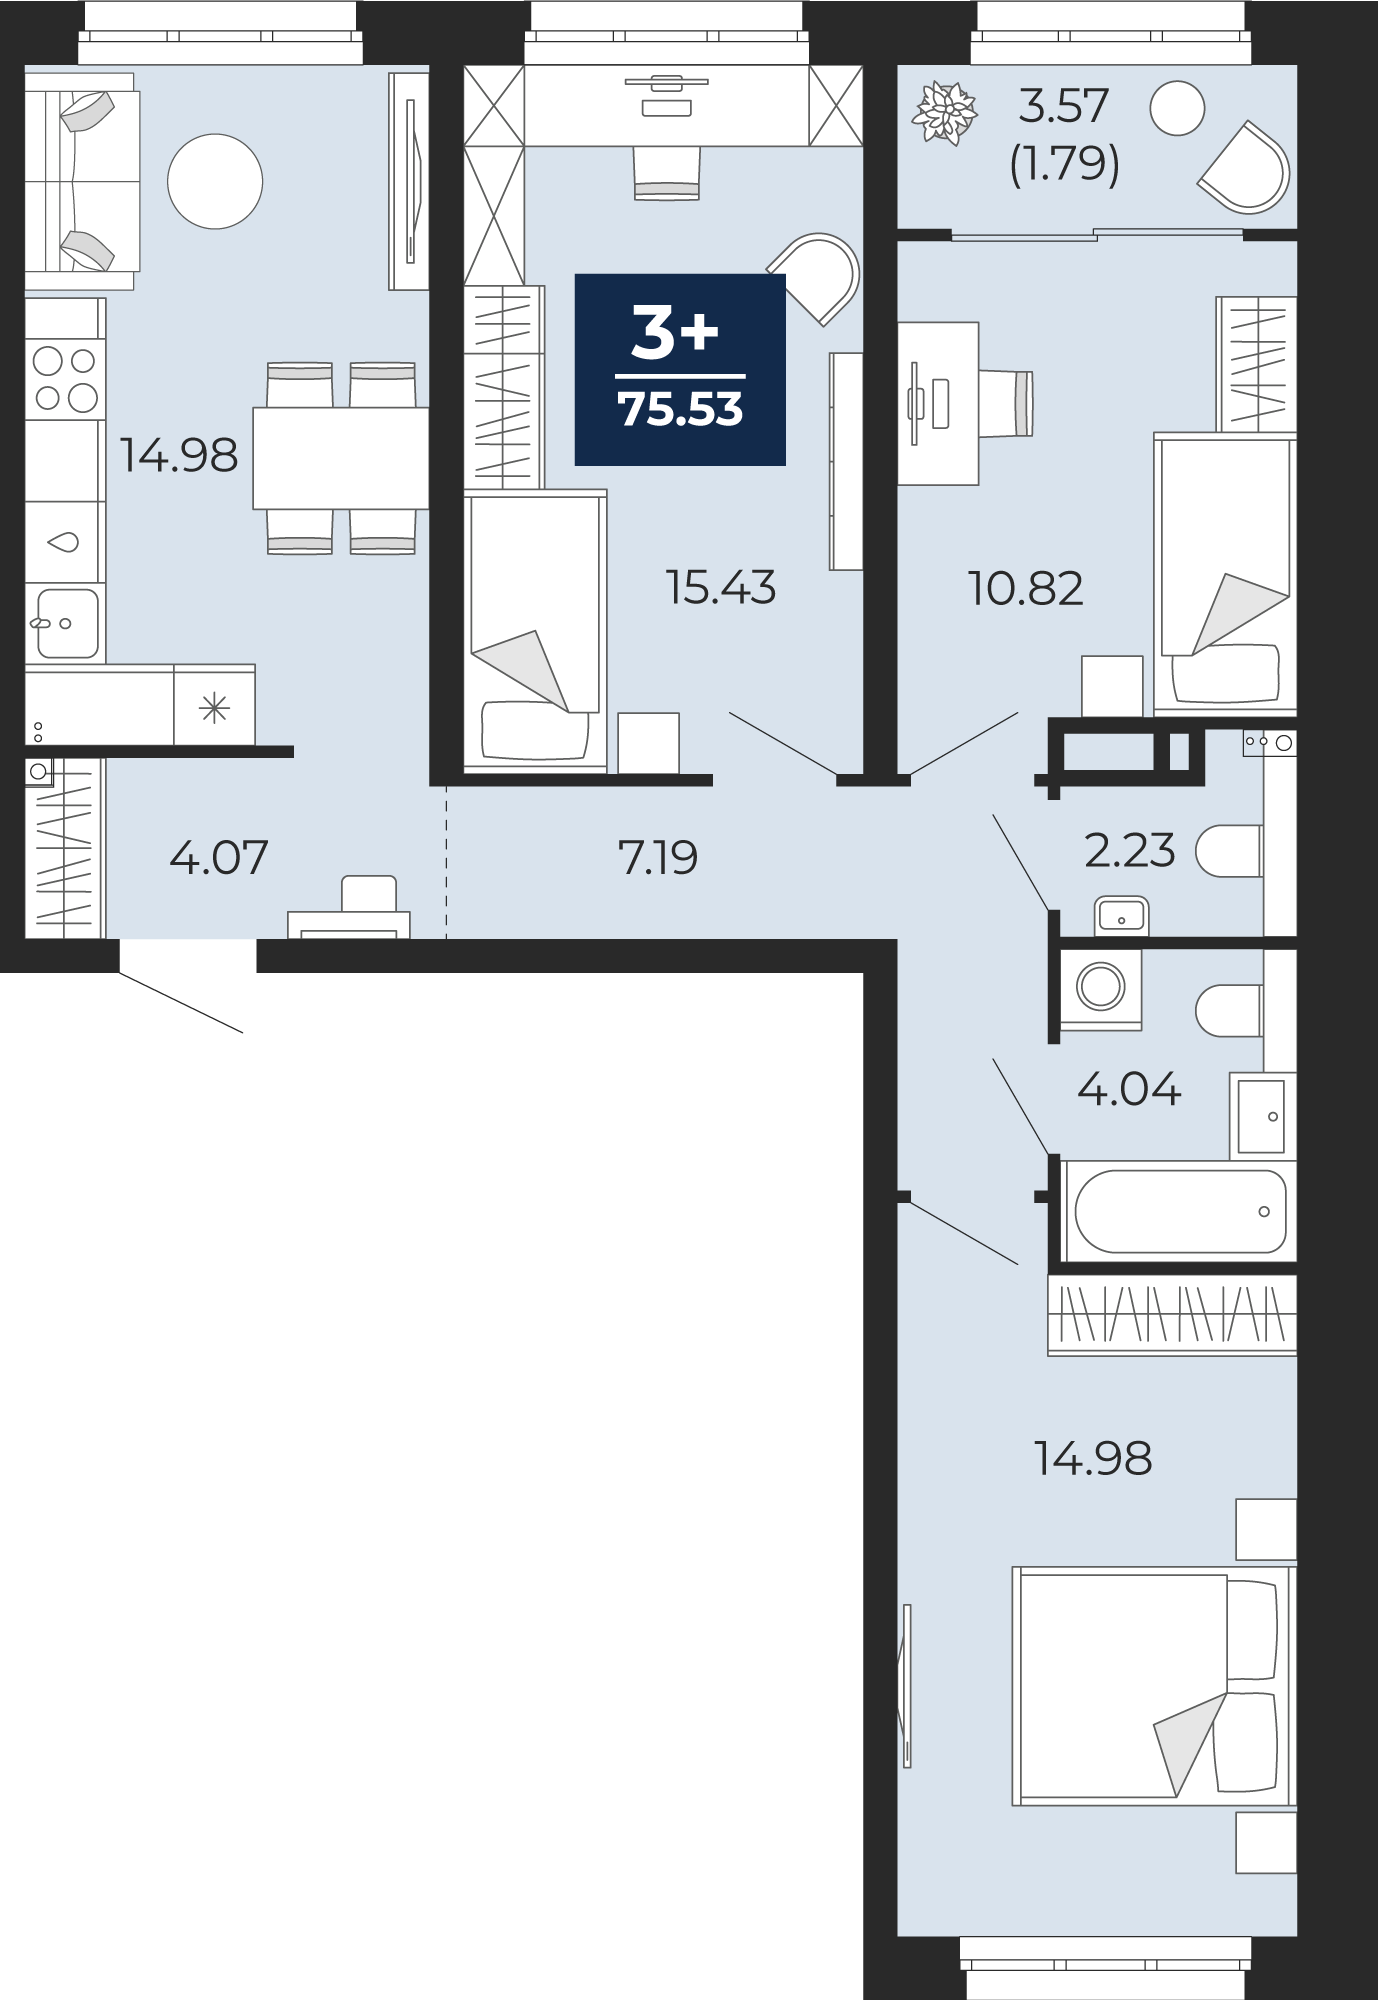 Квартира № 8, 3-комнатная, 75.53 кв. м, 3 этаж